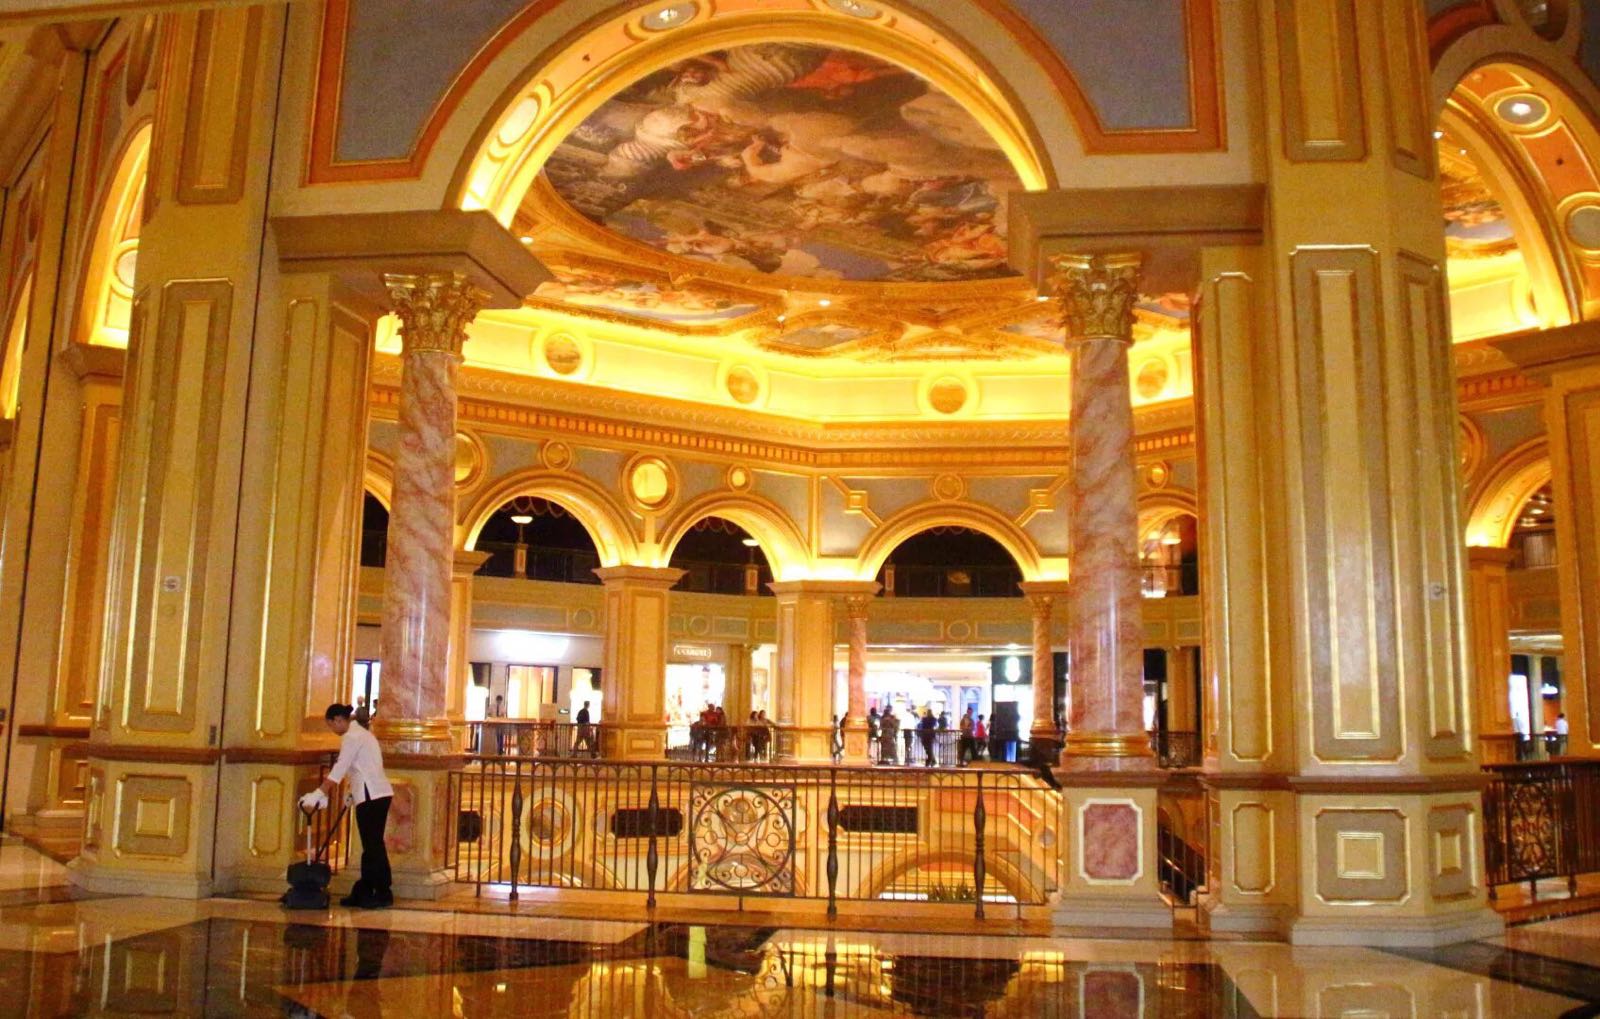 豪华，有钱，任性！！！全球第二大、亚洲最大的赌场度假村！！！据说酒店拥